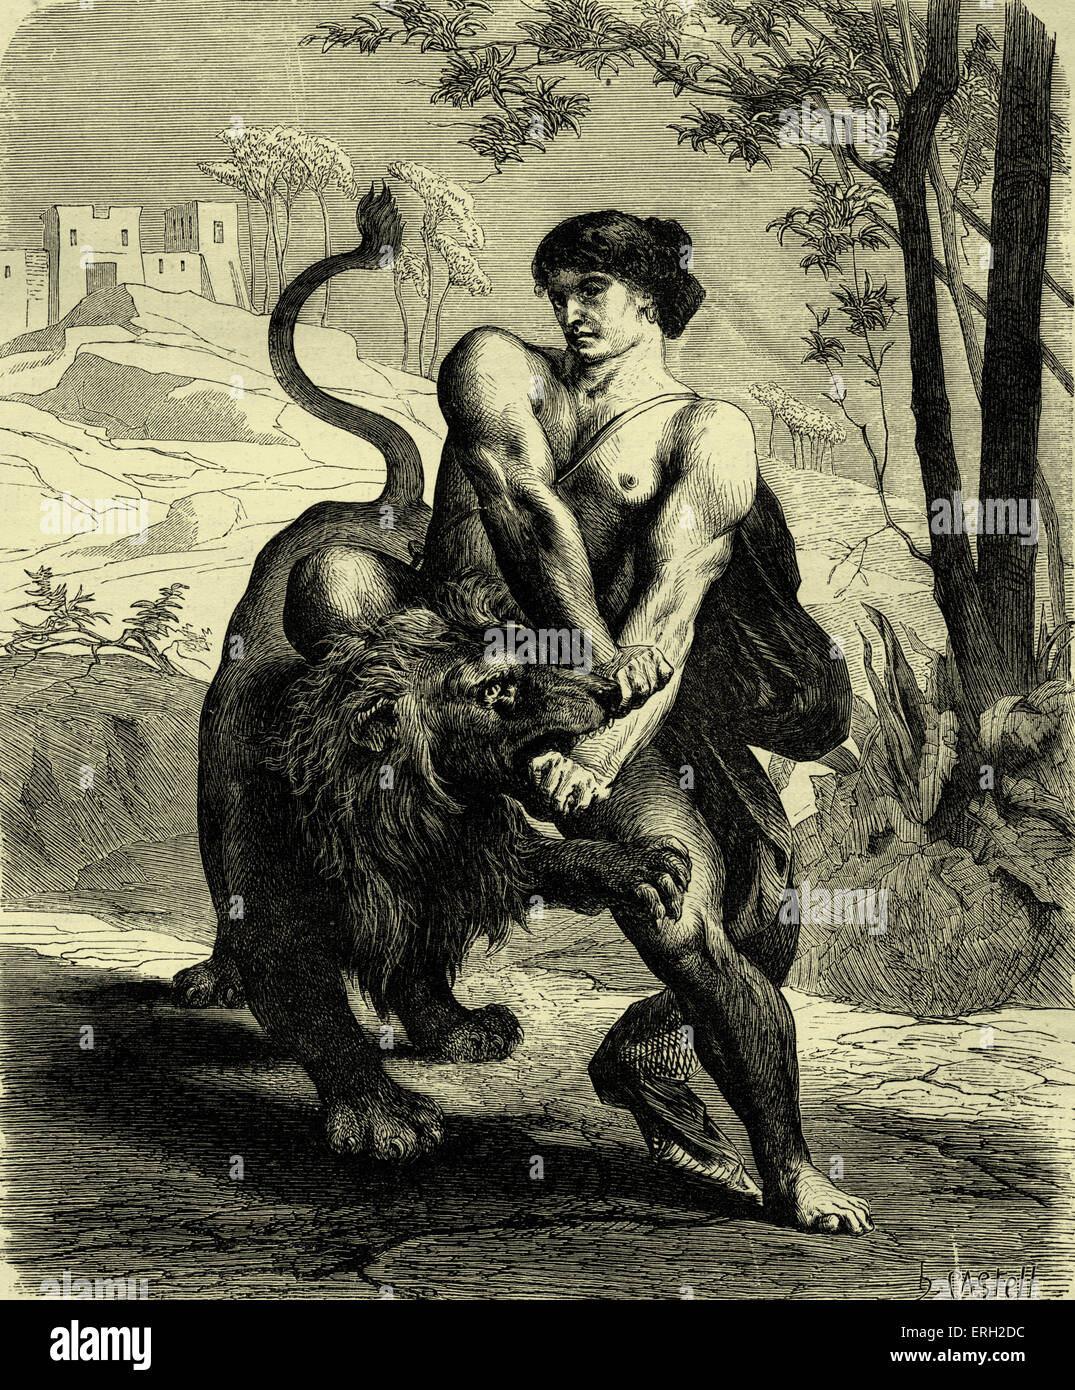 Samson und der Löwe. Ende des 19. Jahrhunderts Darstellung Samson kämpfen und ein Löwe zu besiegen. Buch des alten Testaments Stockfoto